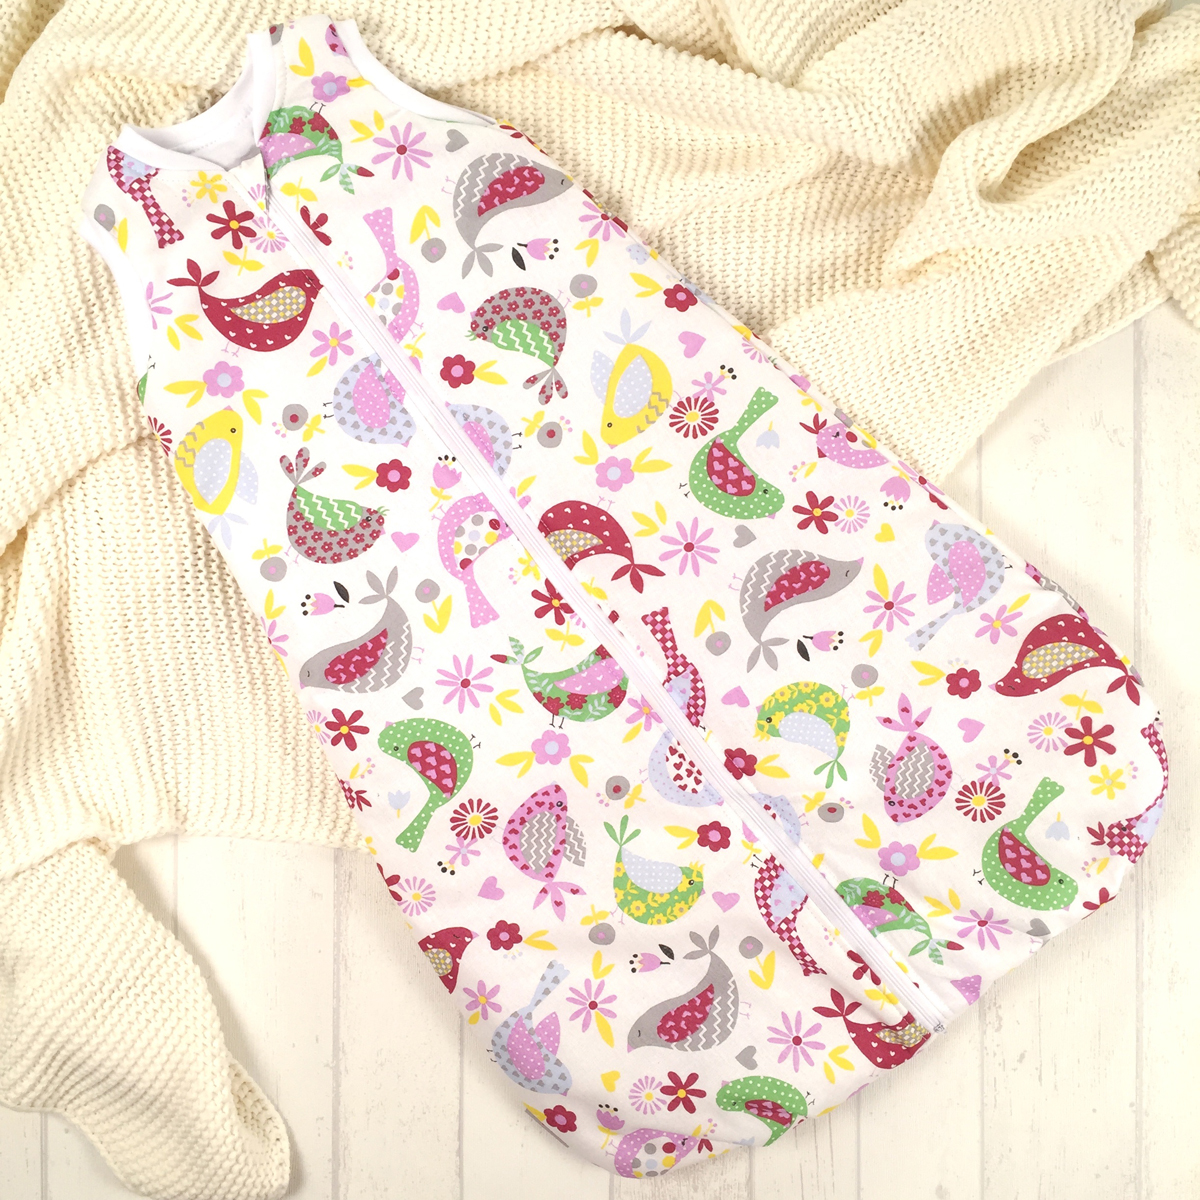 Спальный мешок для новорожденных Супермамкет Птицы, цвет: белый, зеленый, розовый. SPM3/птицы. Размер 62